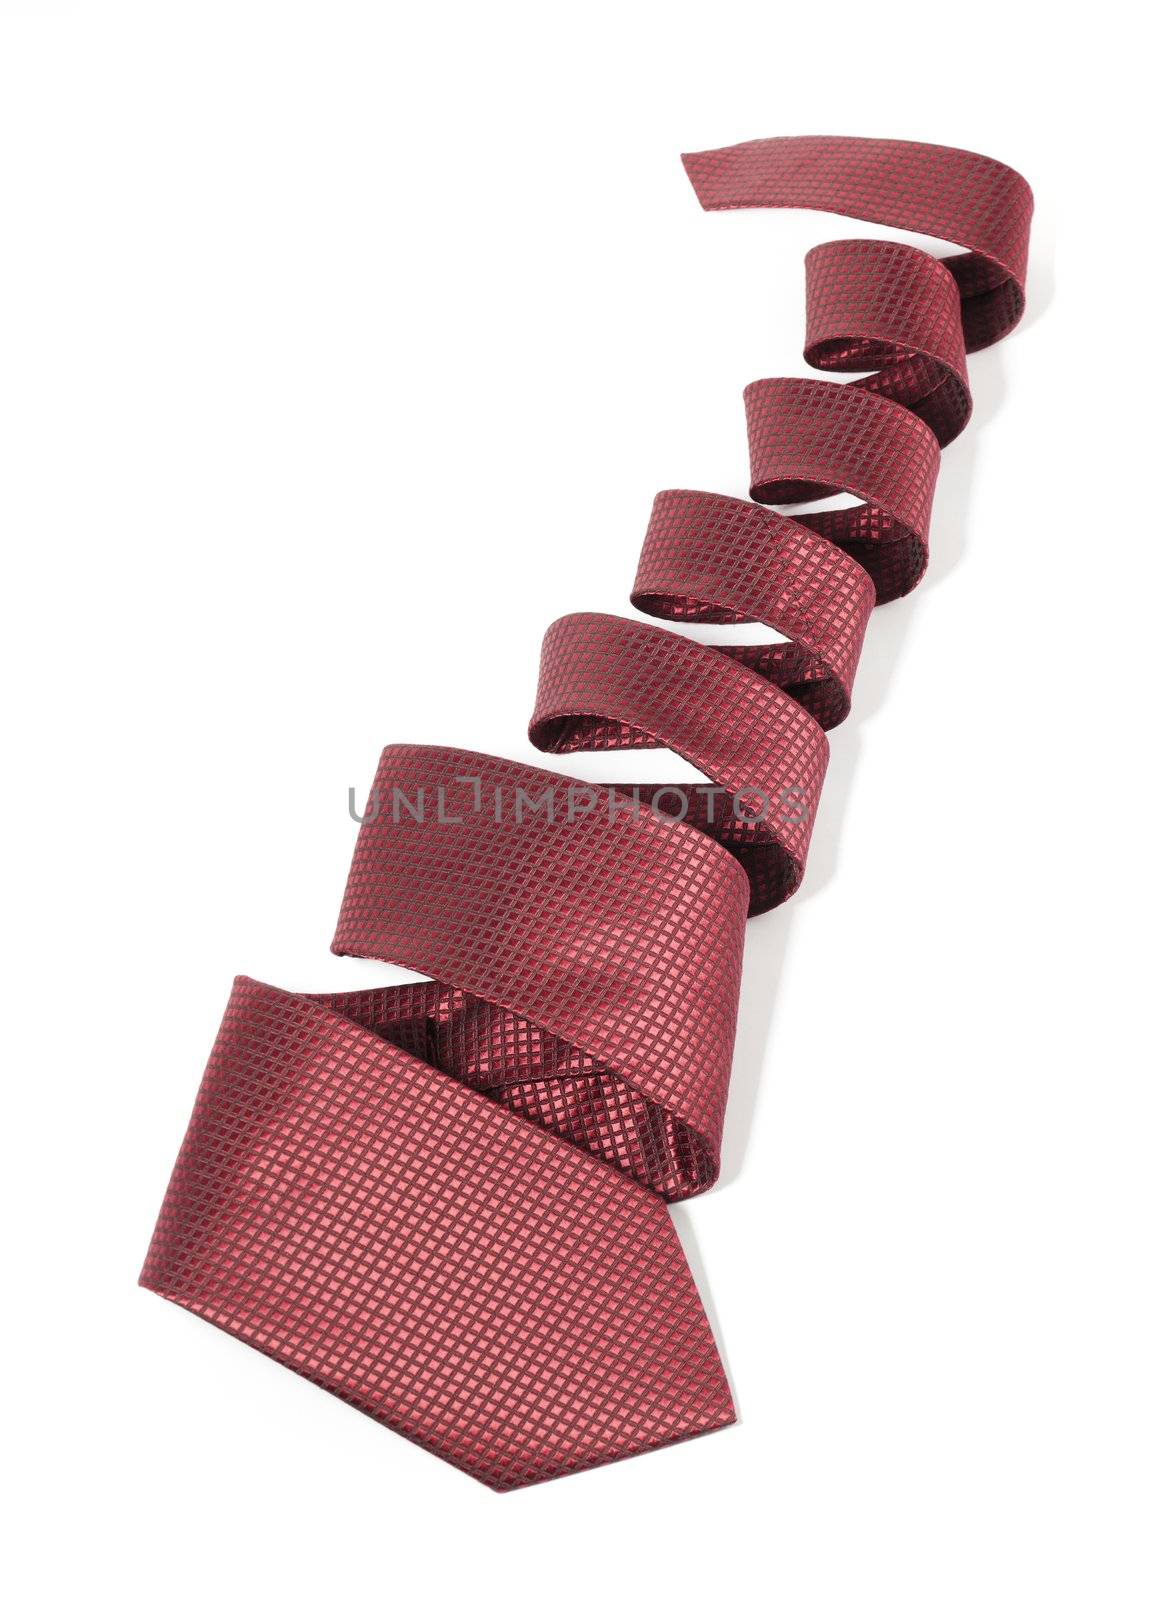 Silk necktie on white